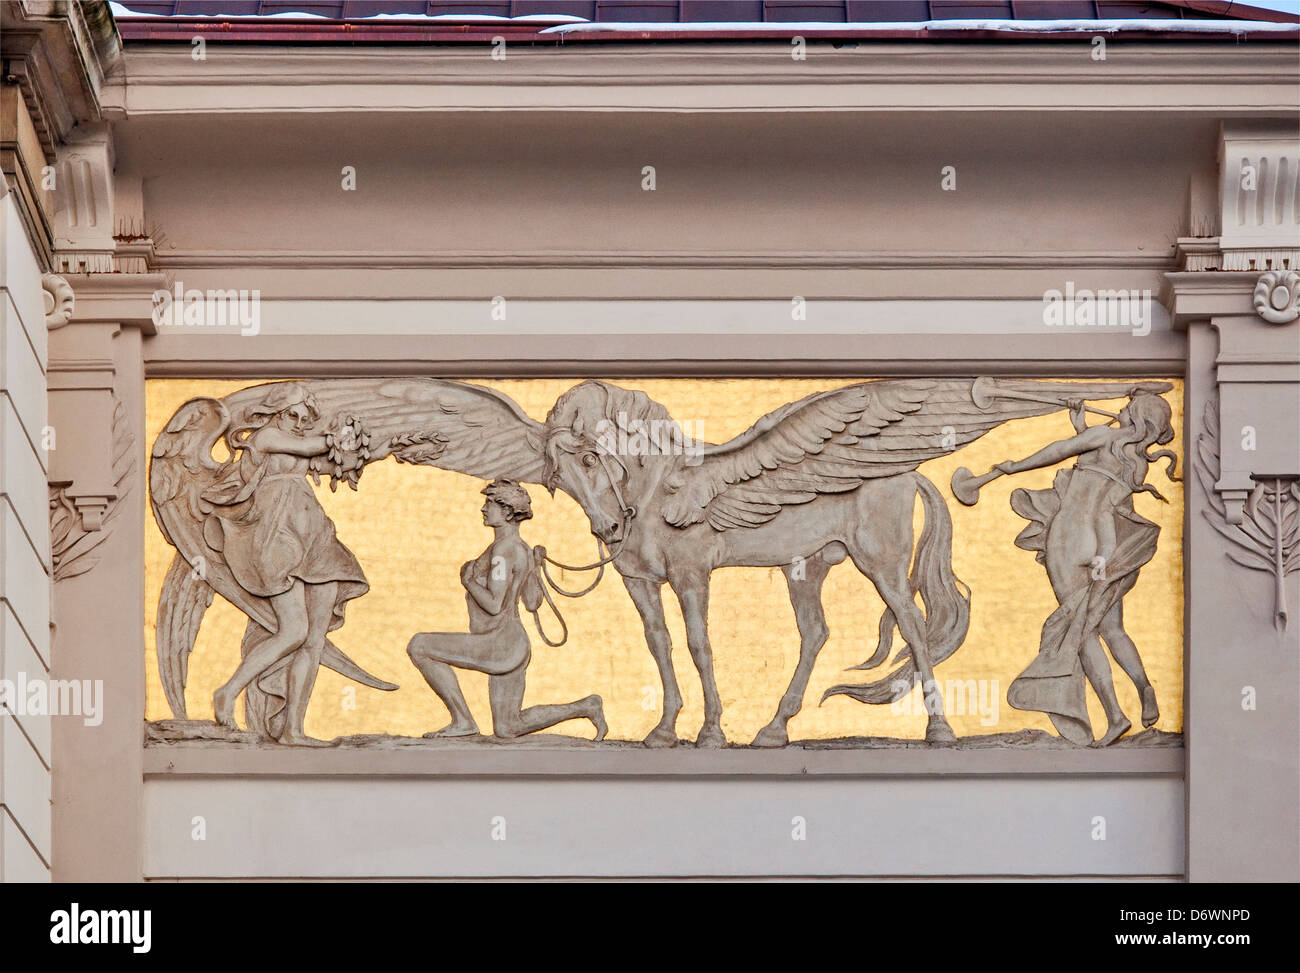 Panel de bajo relieve de estilo Art Nouveau, diseñado por Jacek Malczewski, en el friso de Palac Sztuki o Palacio de Bellas Artes de Cracovia, Polonia Foto de stock